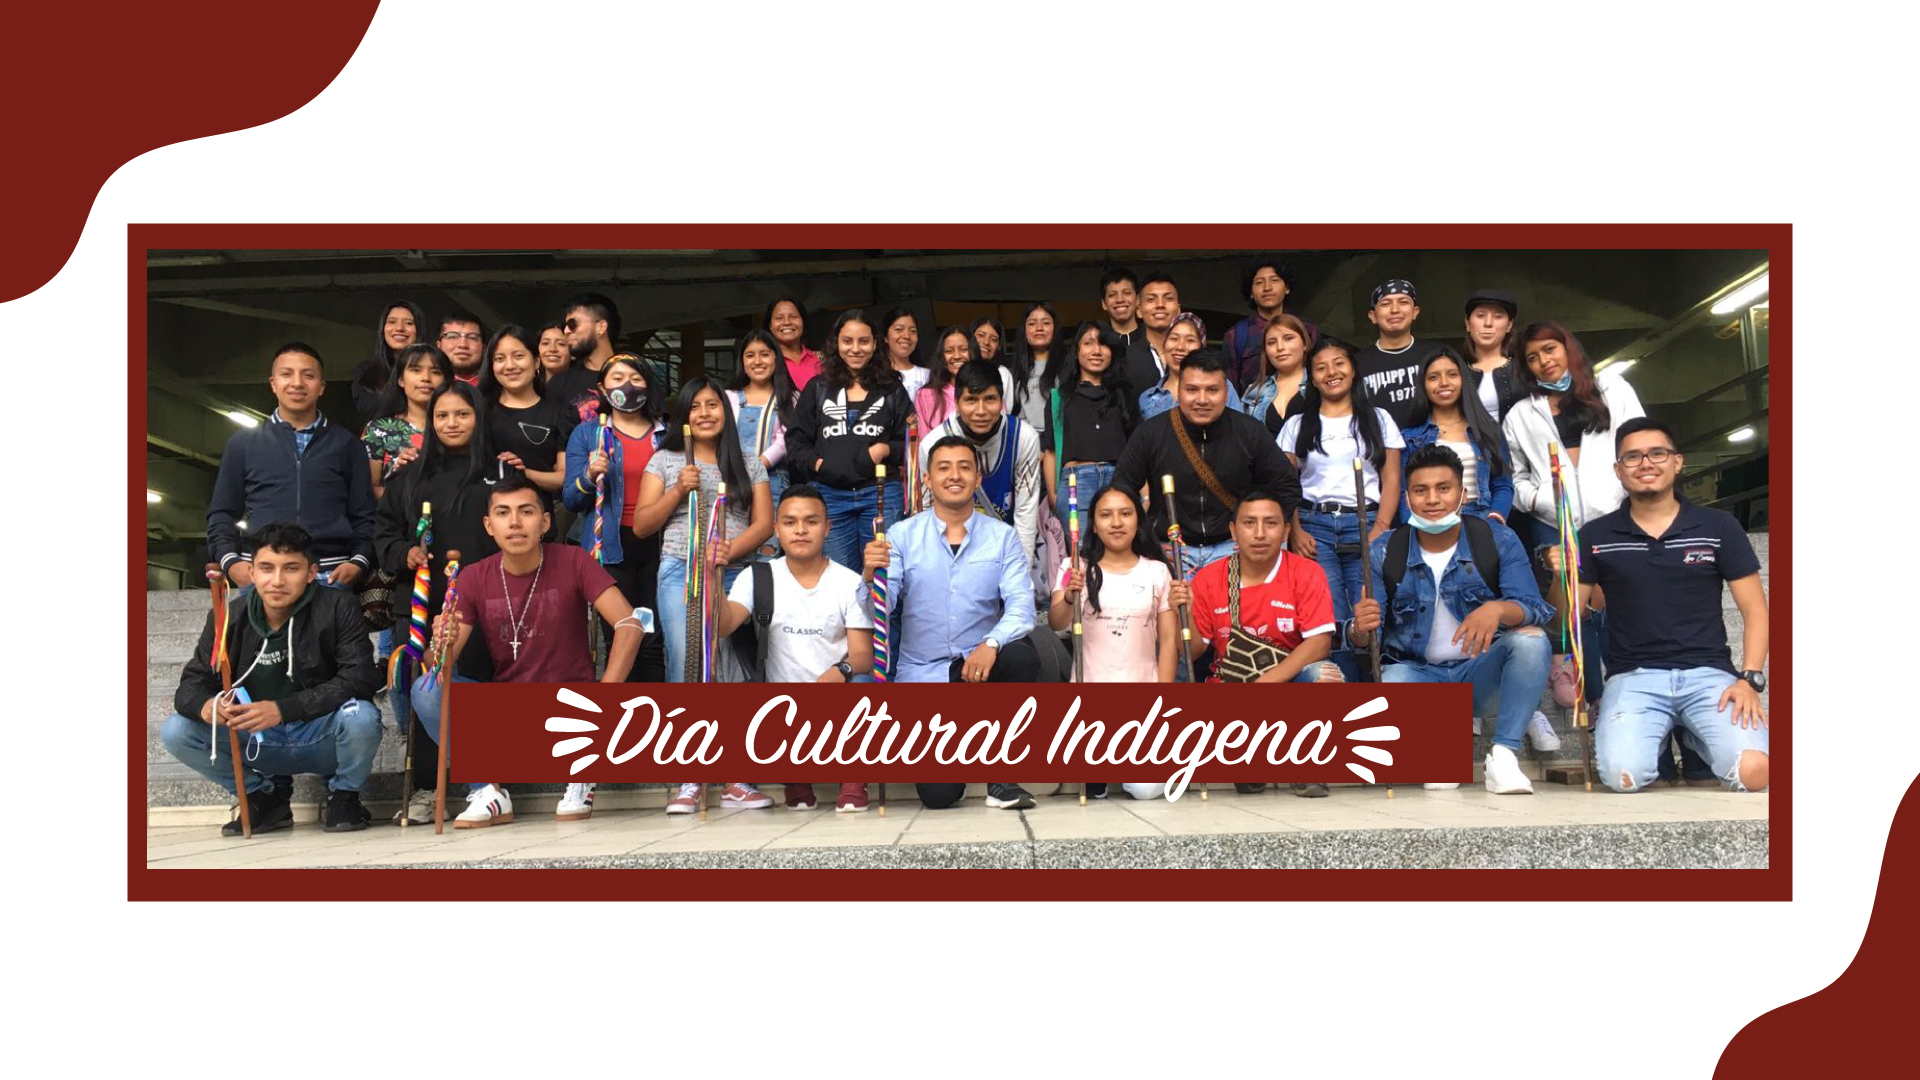 Cabildo Indígena: Danzando al son de mis raíces